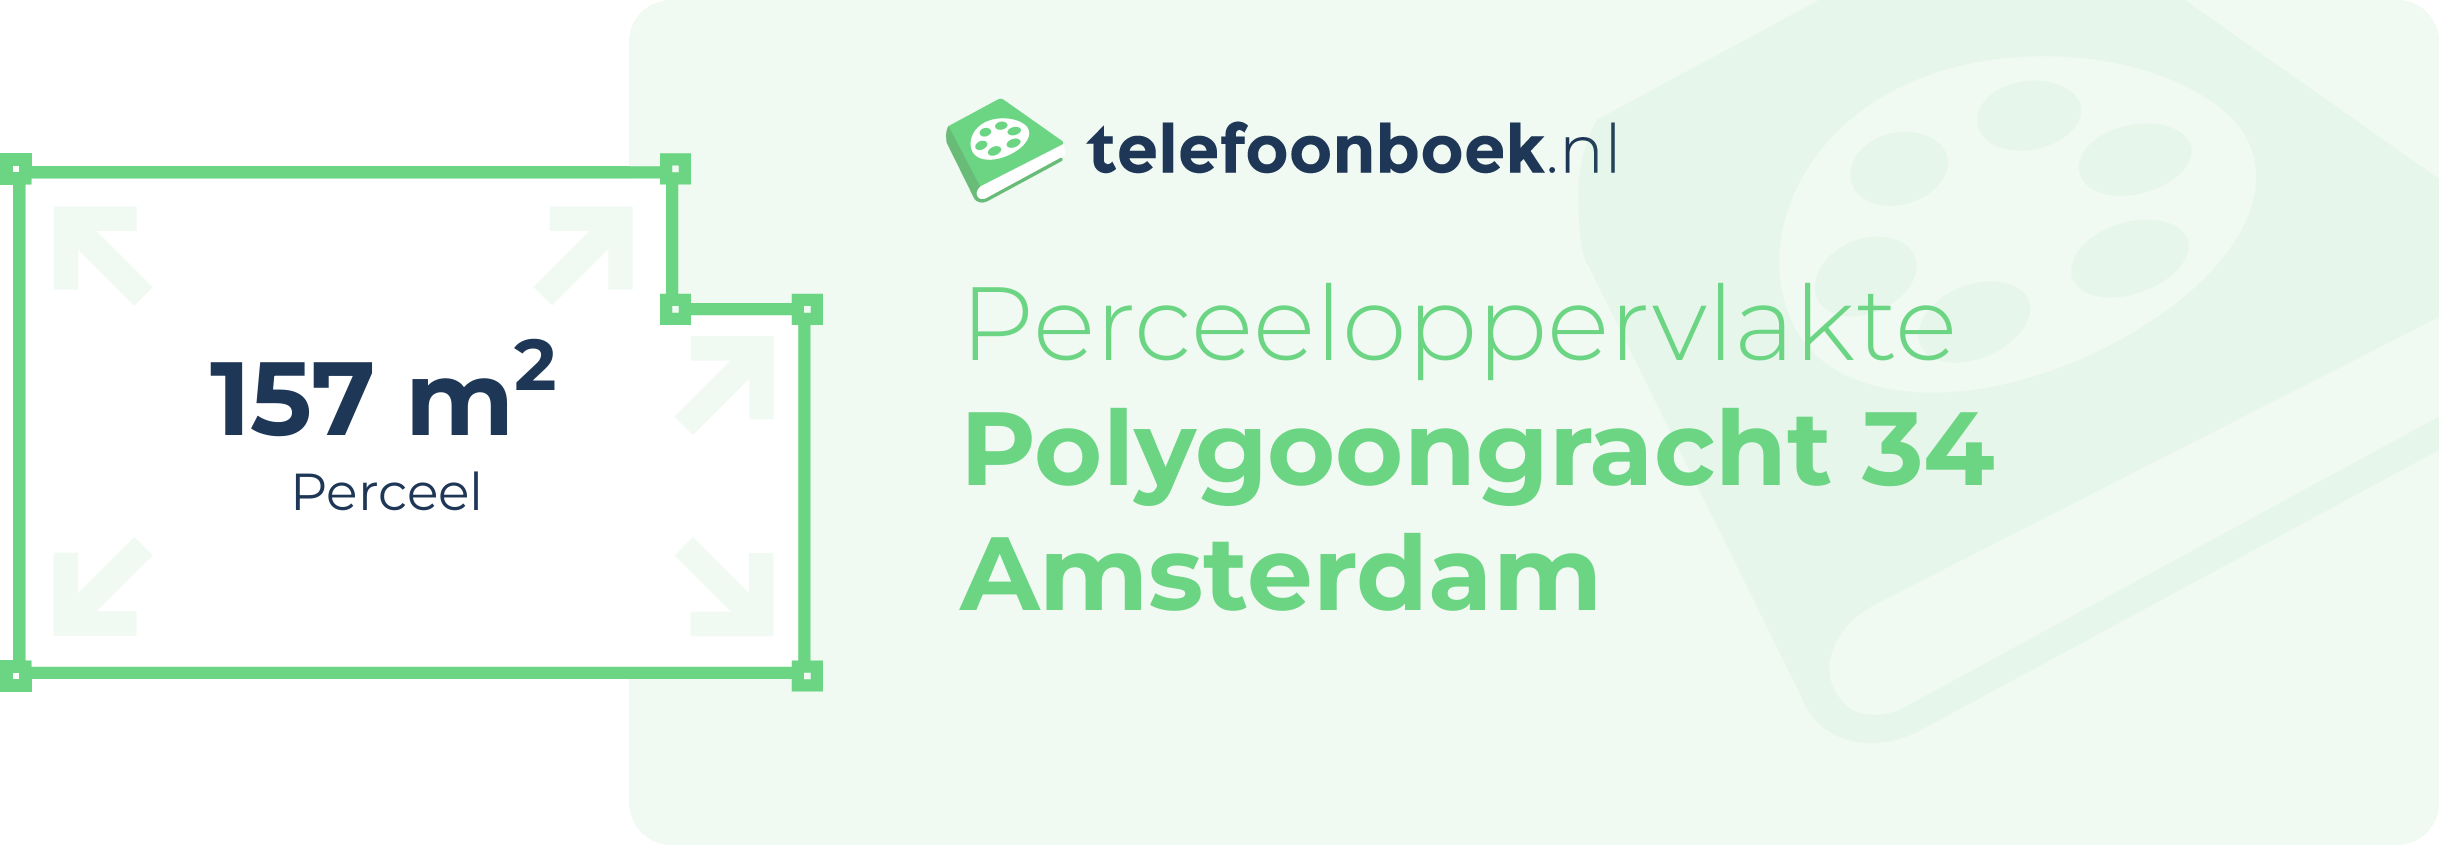 Perceeloppervlakte Polygoongracht 34 Amsterdam